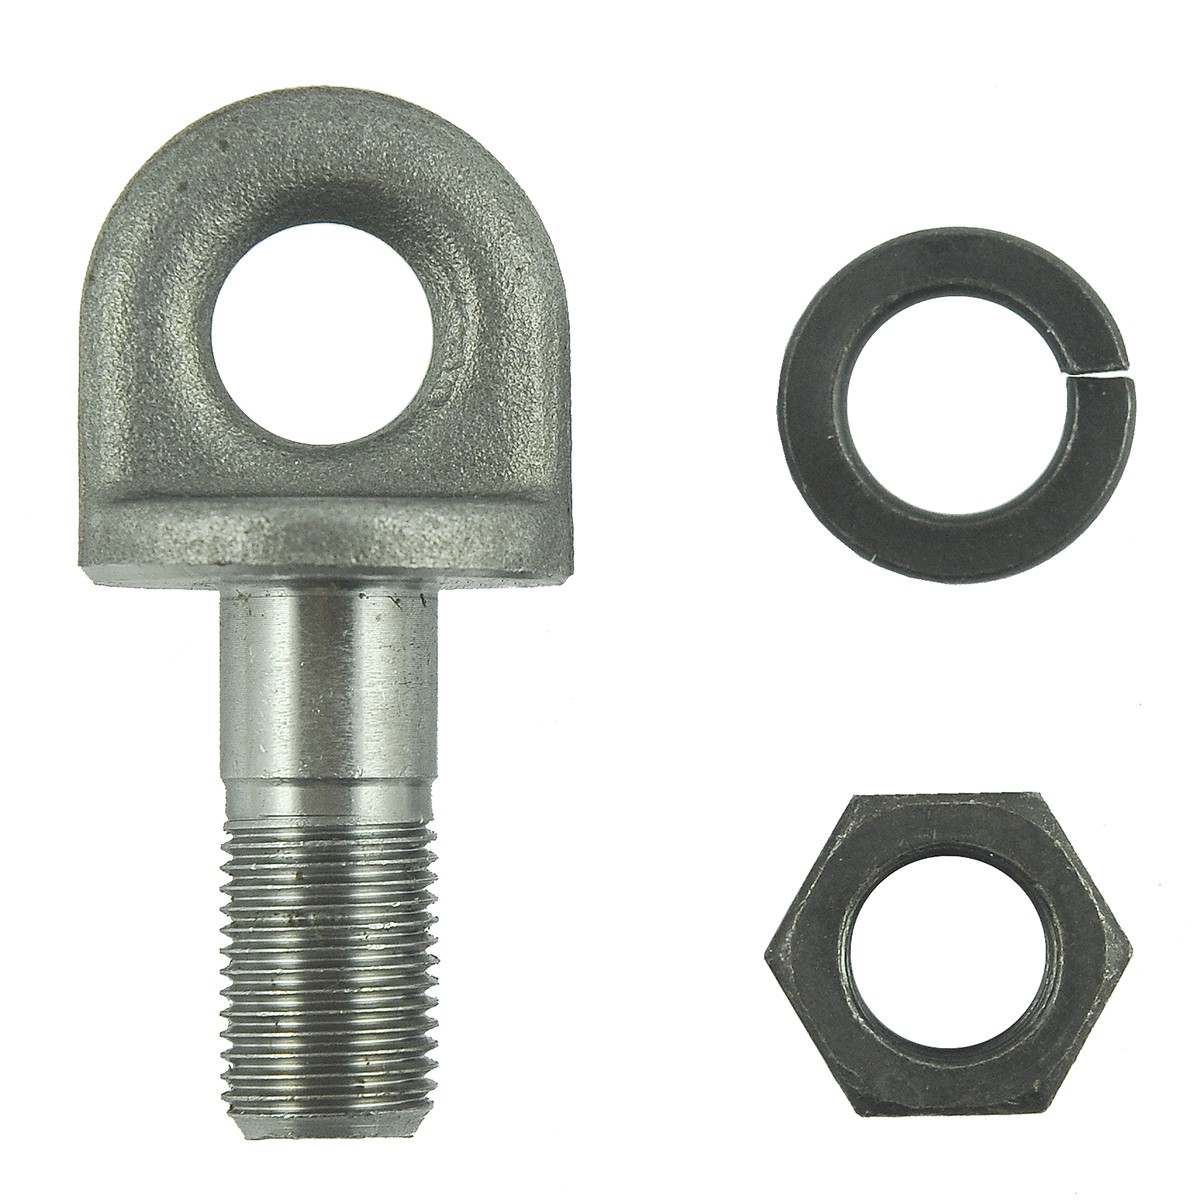 Eye bolt / Ø 16 mm / M16 x 40 mm / Kubota L3408/L4508 / 5-25-131-17